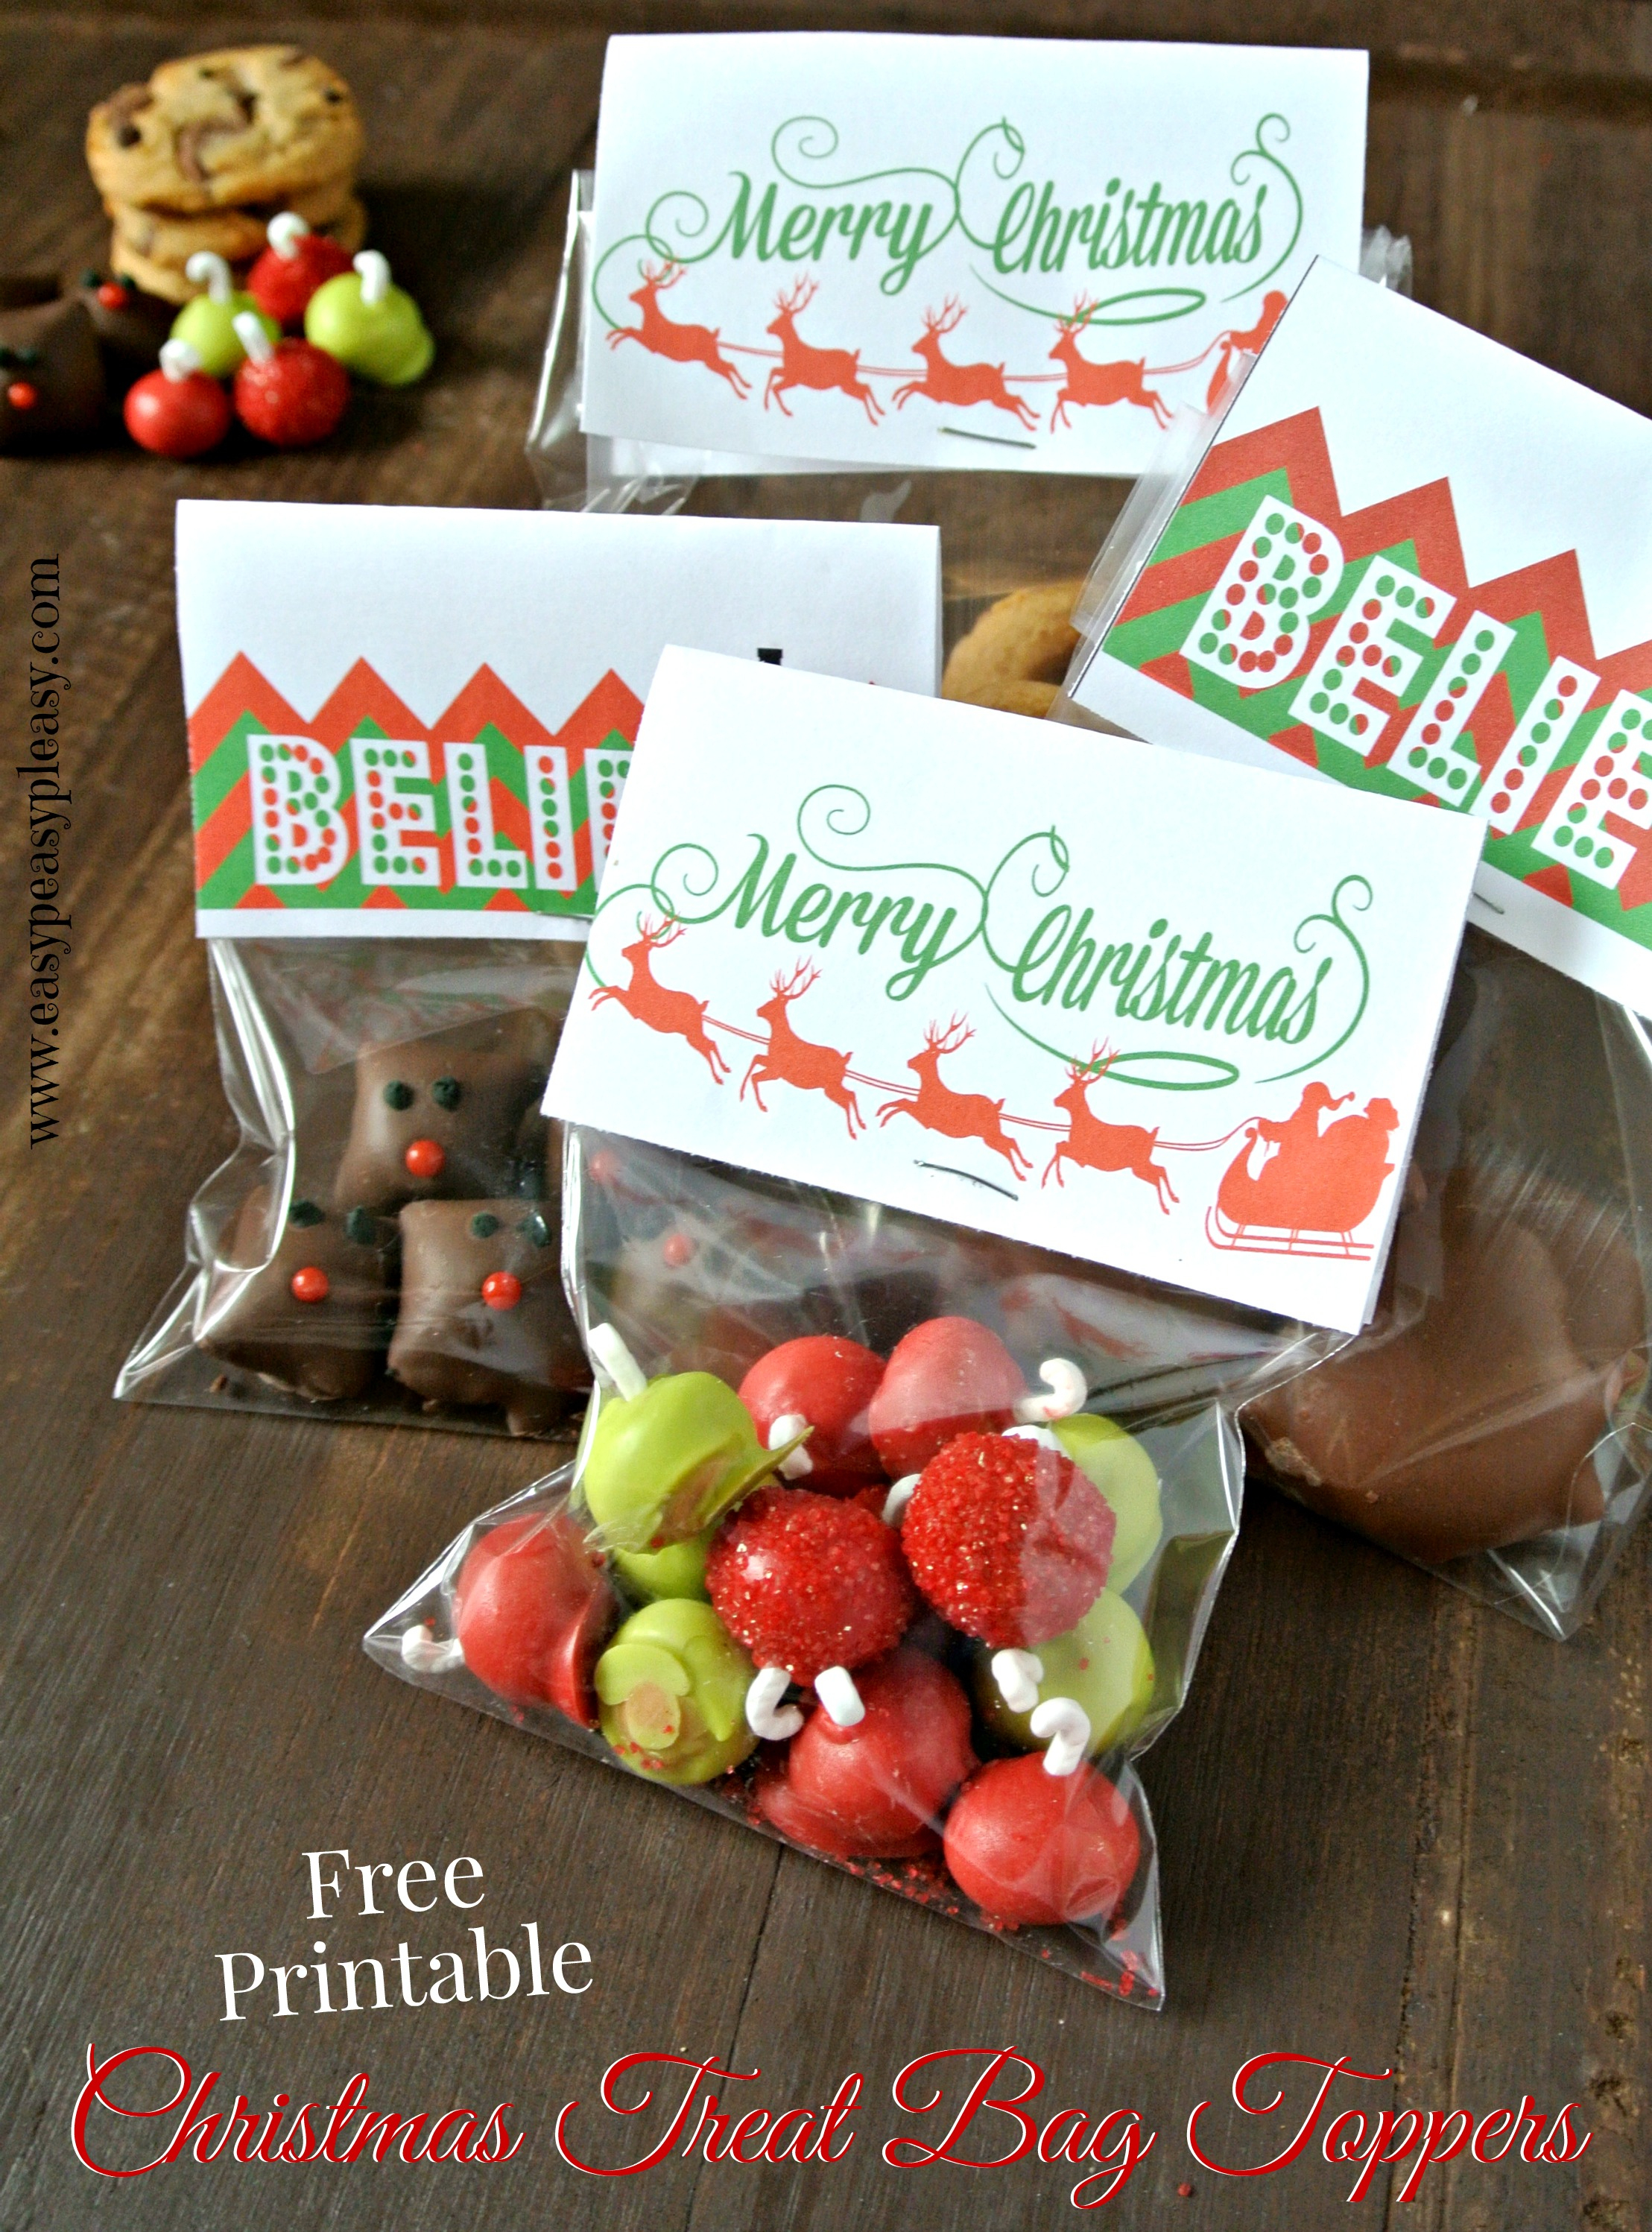 3 Free Printable Christmas Treat Bag Toppers - Easy Peasy Pleasy - Free Printable Christmas Bag Toppers